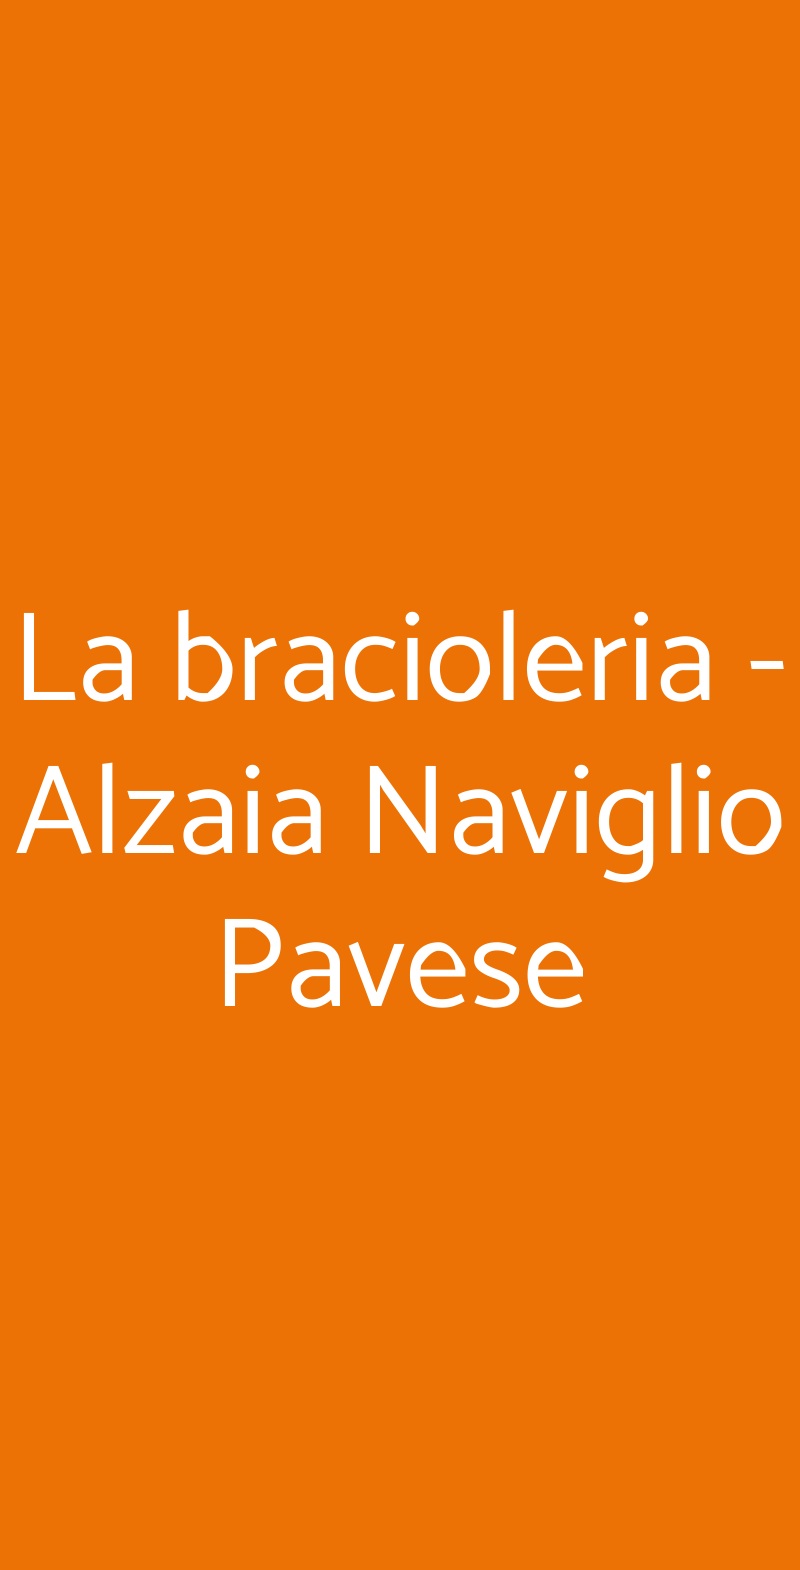 La bracioleria - Alzaia Naviglio Pavese Milano menù 1 pagina